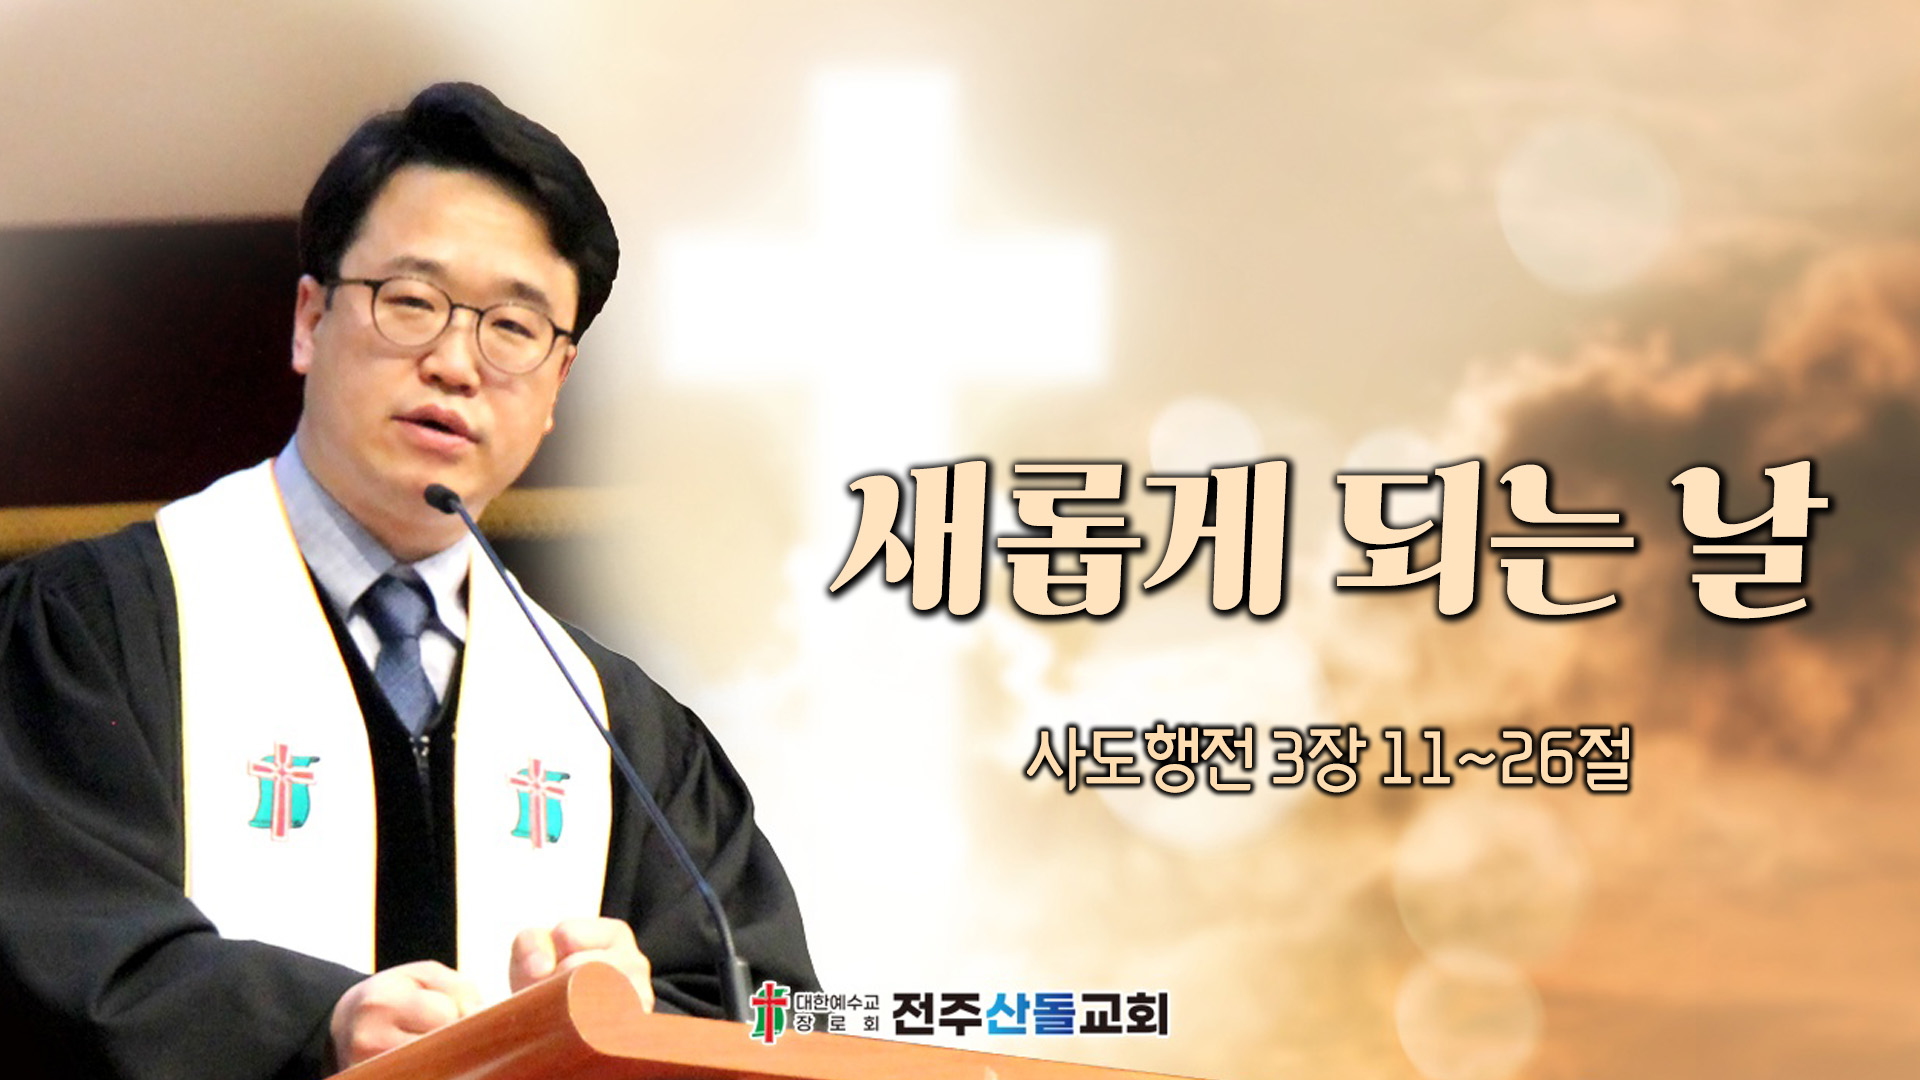 새롭게 되는 날┃전주산돌교회 김진영 목사	